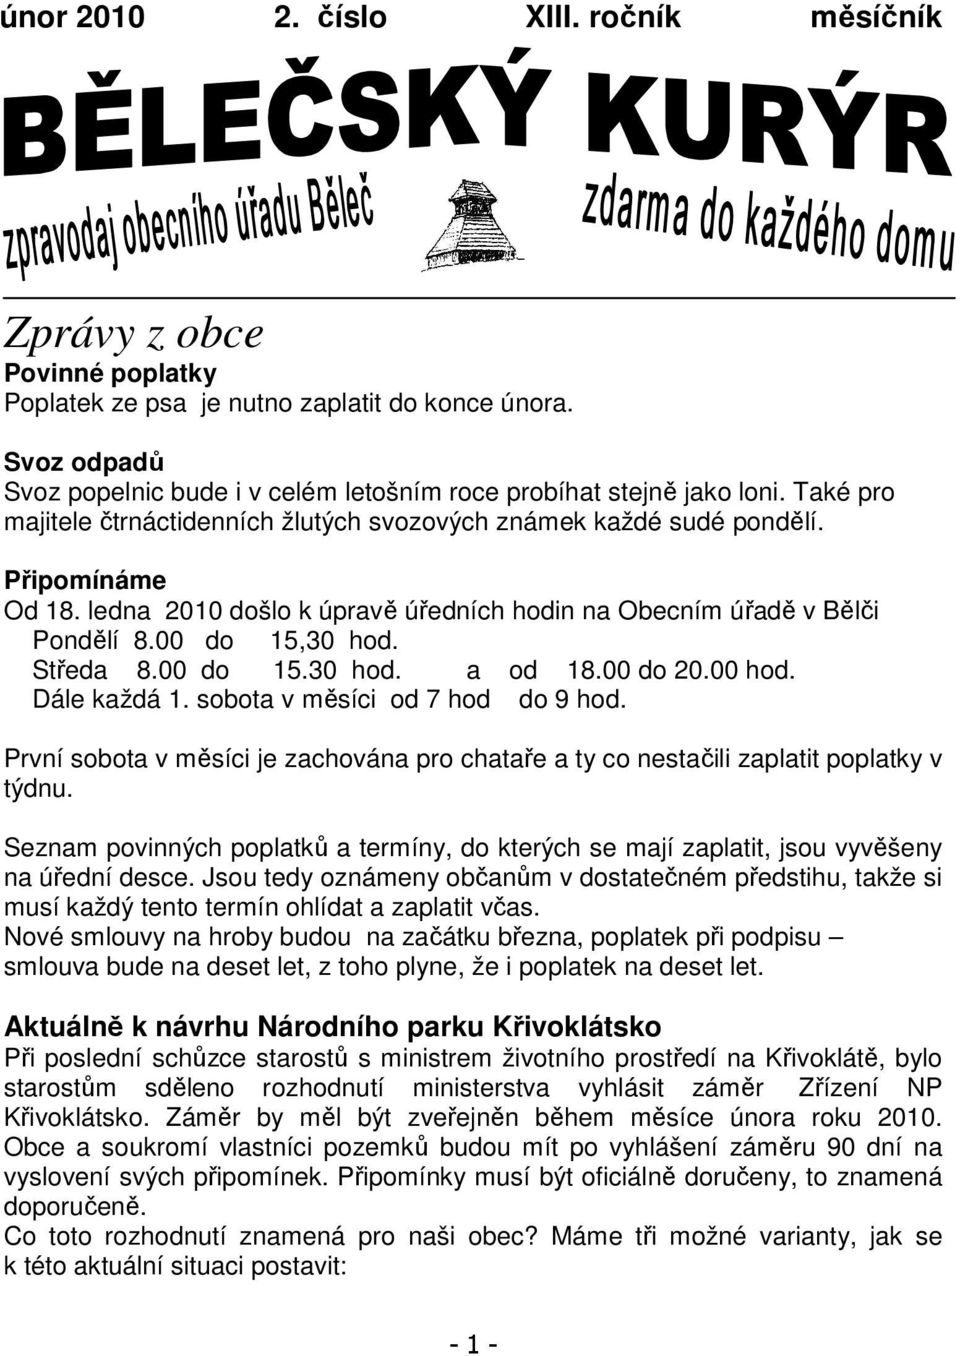 ledna 2010 došlo k úpravě úředních hodin na Obecním úřadě v Bělči Pondělí 8.00 do 15,30 hod. Středa 8.00 do 15.30 hod. a od 18.00 do 20.00 hod. Dále každá 1. sobota v měsíci od 7 hod do 9 hod.